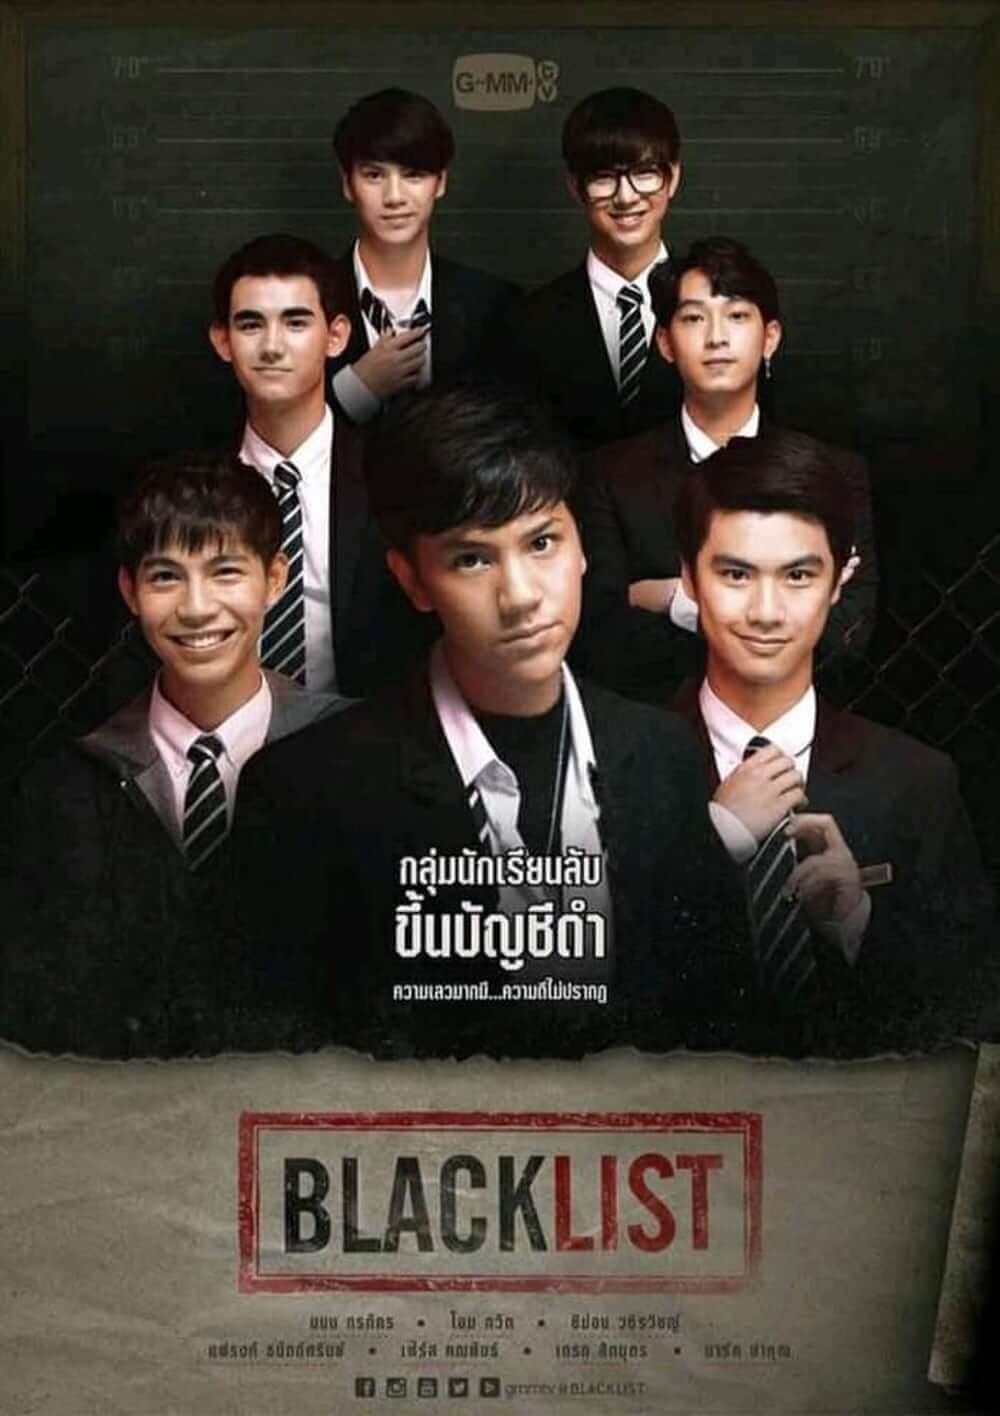 لیست سیاه (Blacklist)